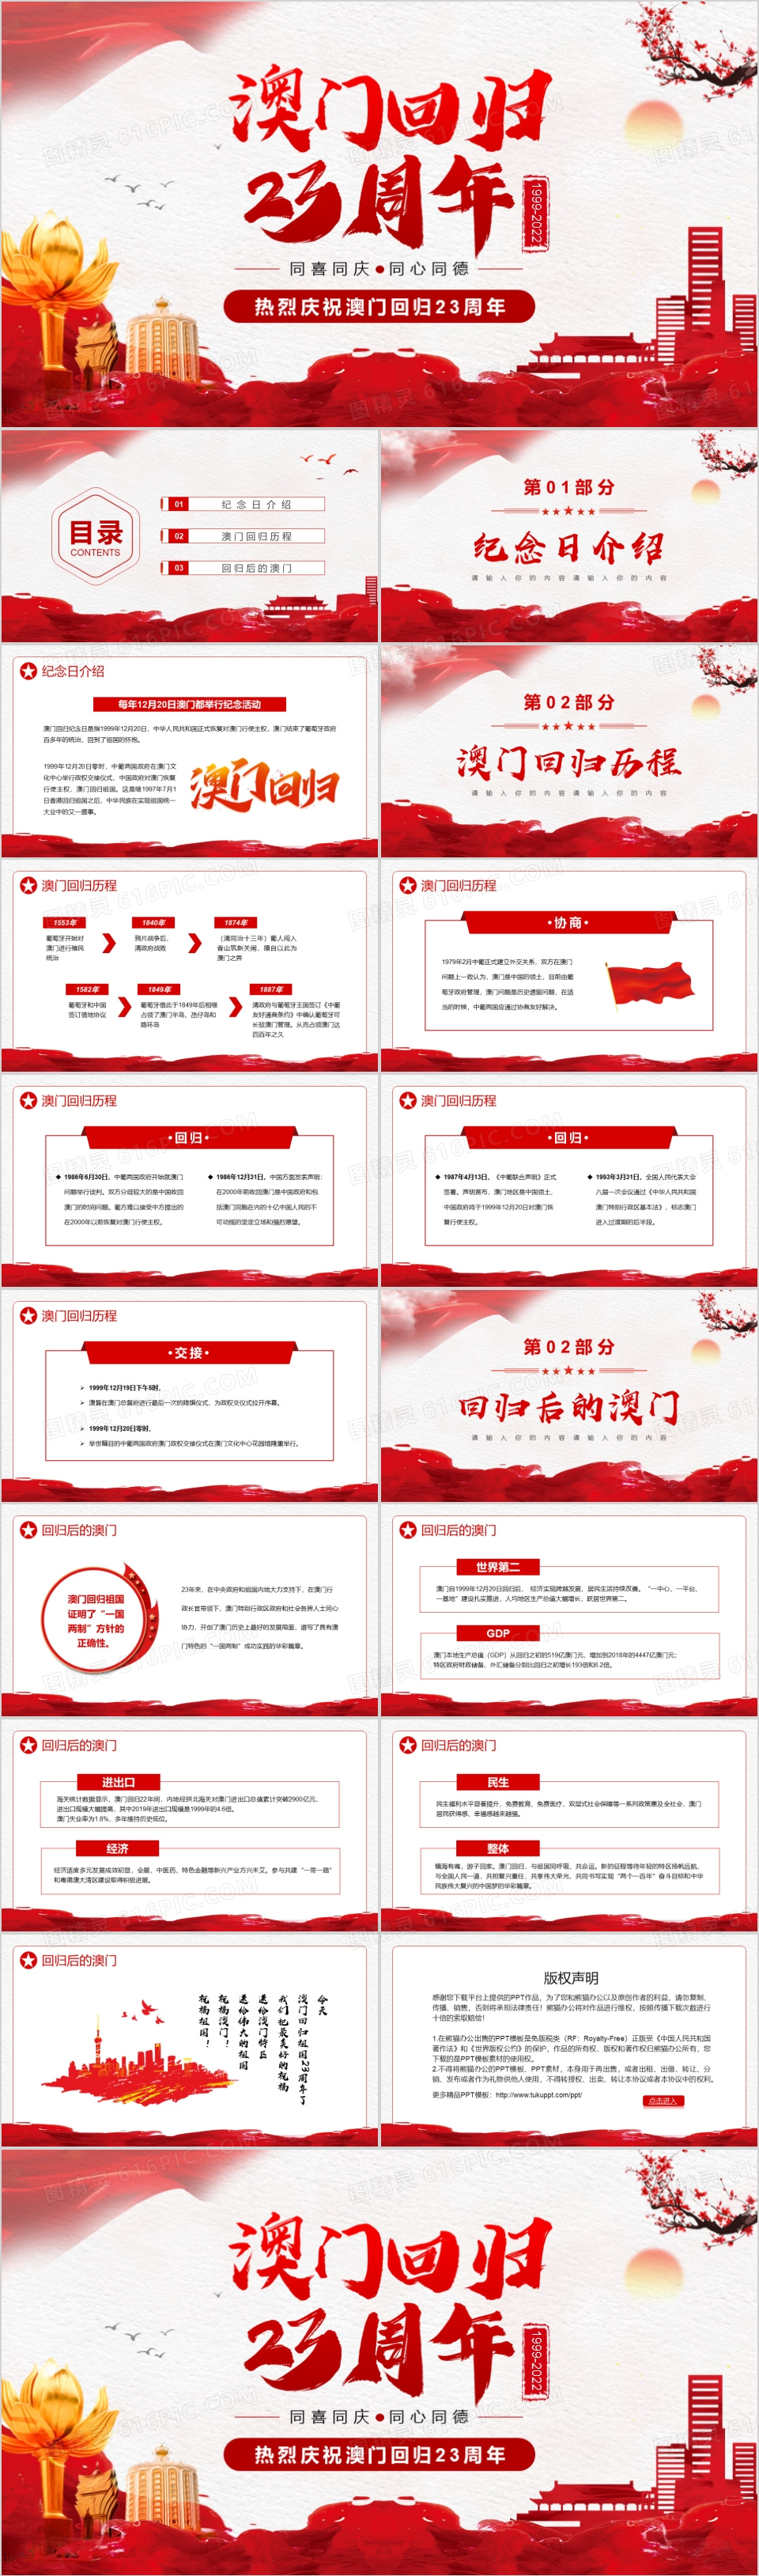 红色简约中国风澳门回归23周年PPT模板